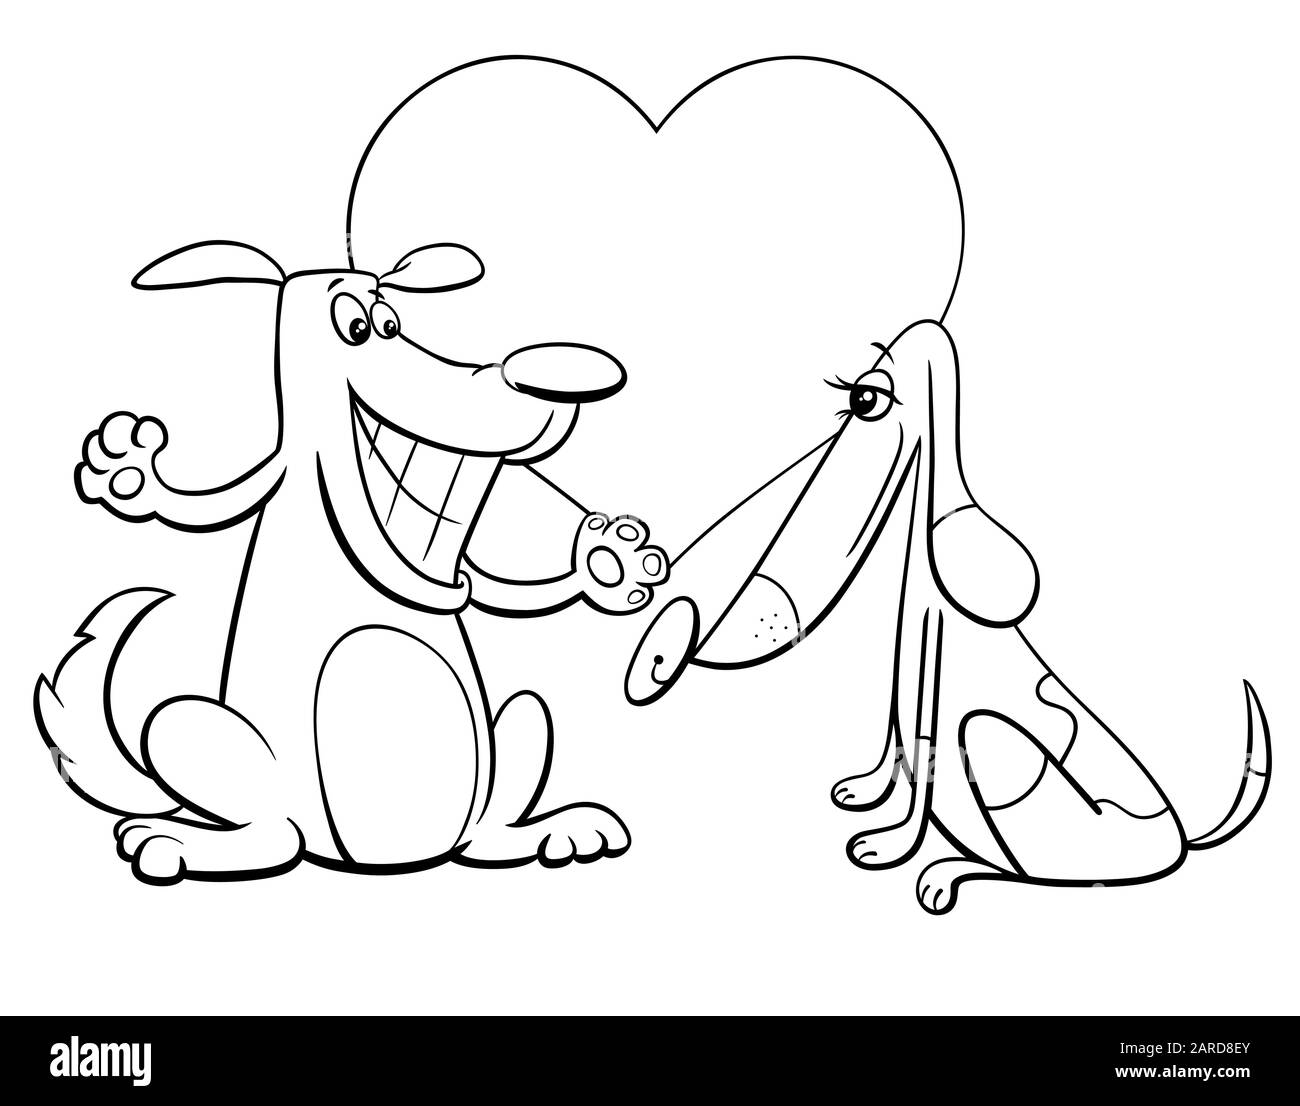 Schwarz-weiß Valentines Day Grußkarte Cartoon Illustration mit Lustigen Hundepaar-Figuren auf der Seite "Love Coloring Book" Stock Vektor